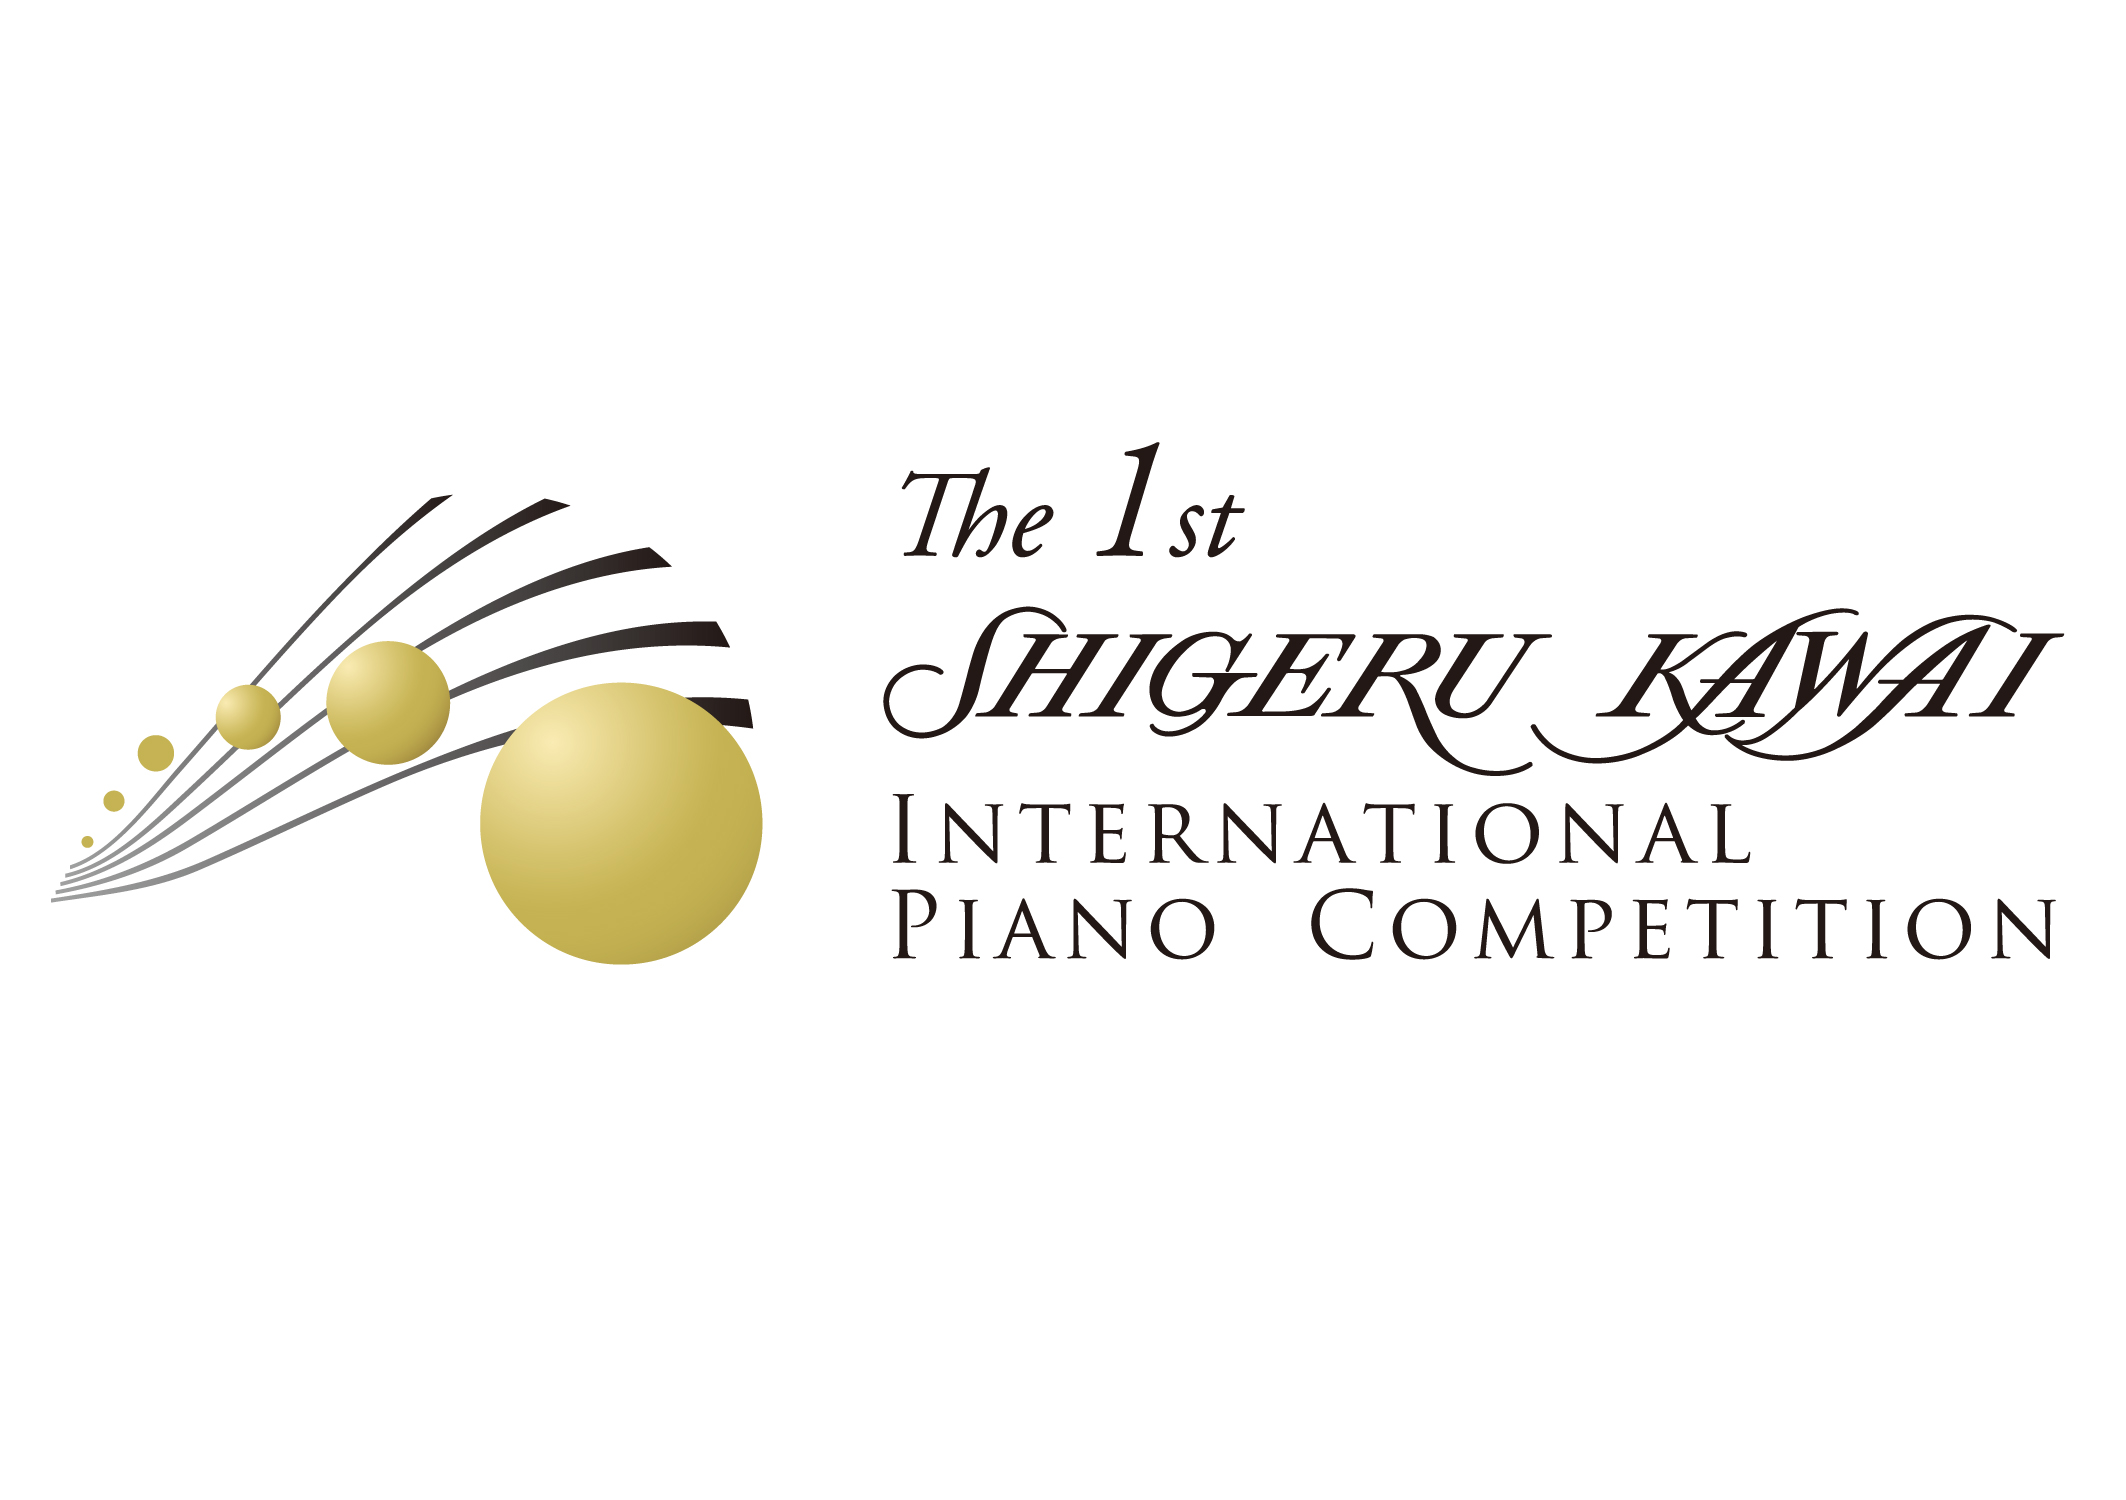 「Shigeru Kawai国際ピアノコンクール」ロゴ